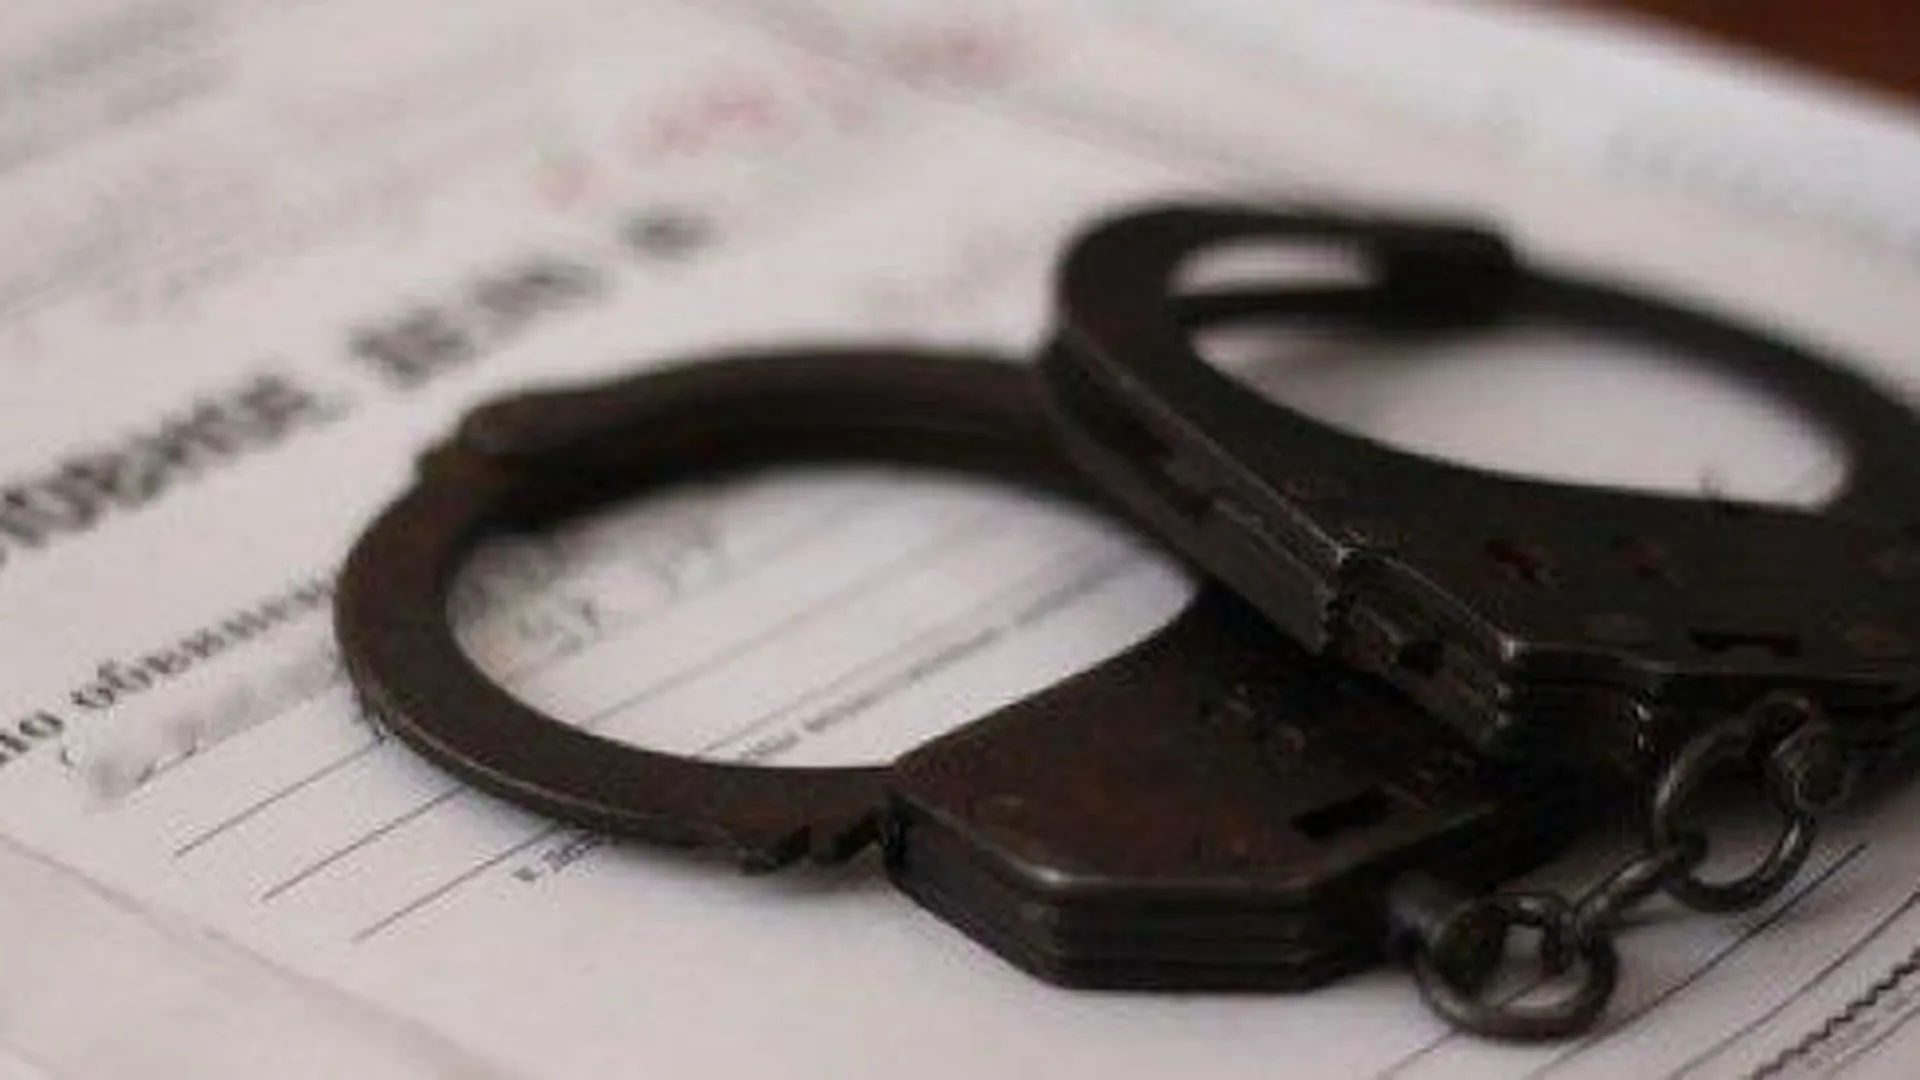 СК РФ ходатайствует об аресте подозреваемых в фальсификации лекарств в области